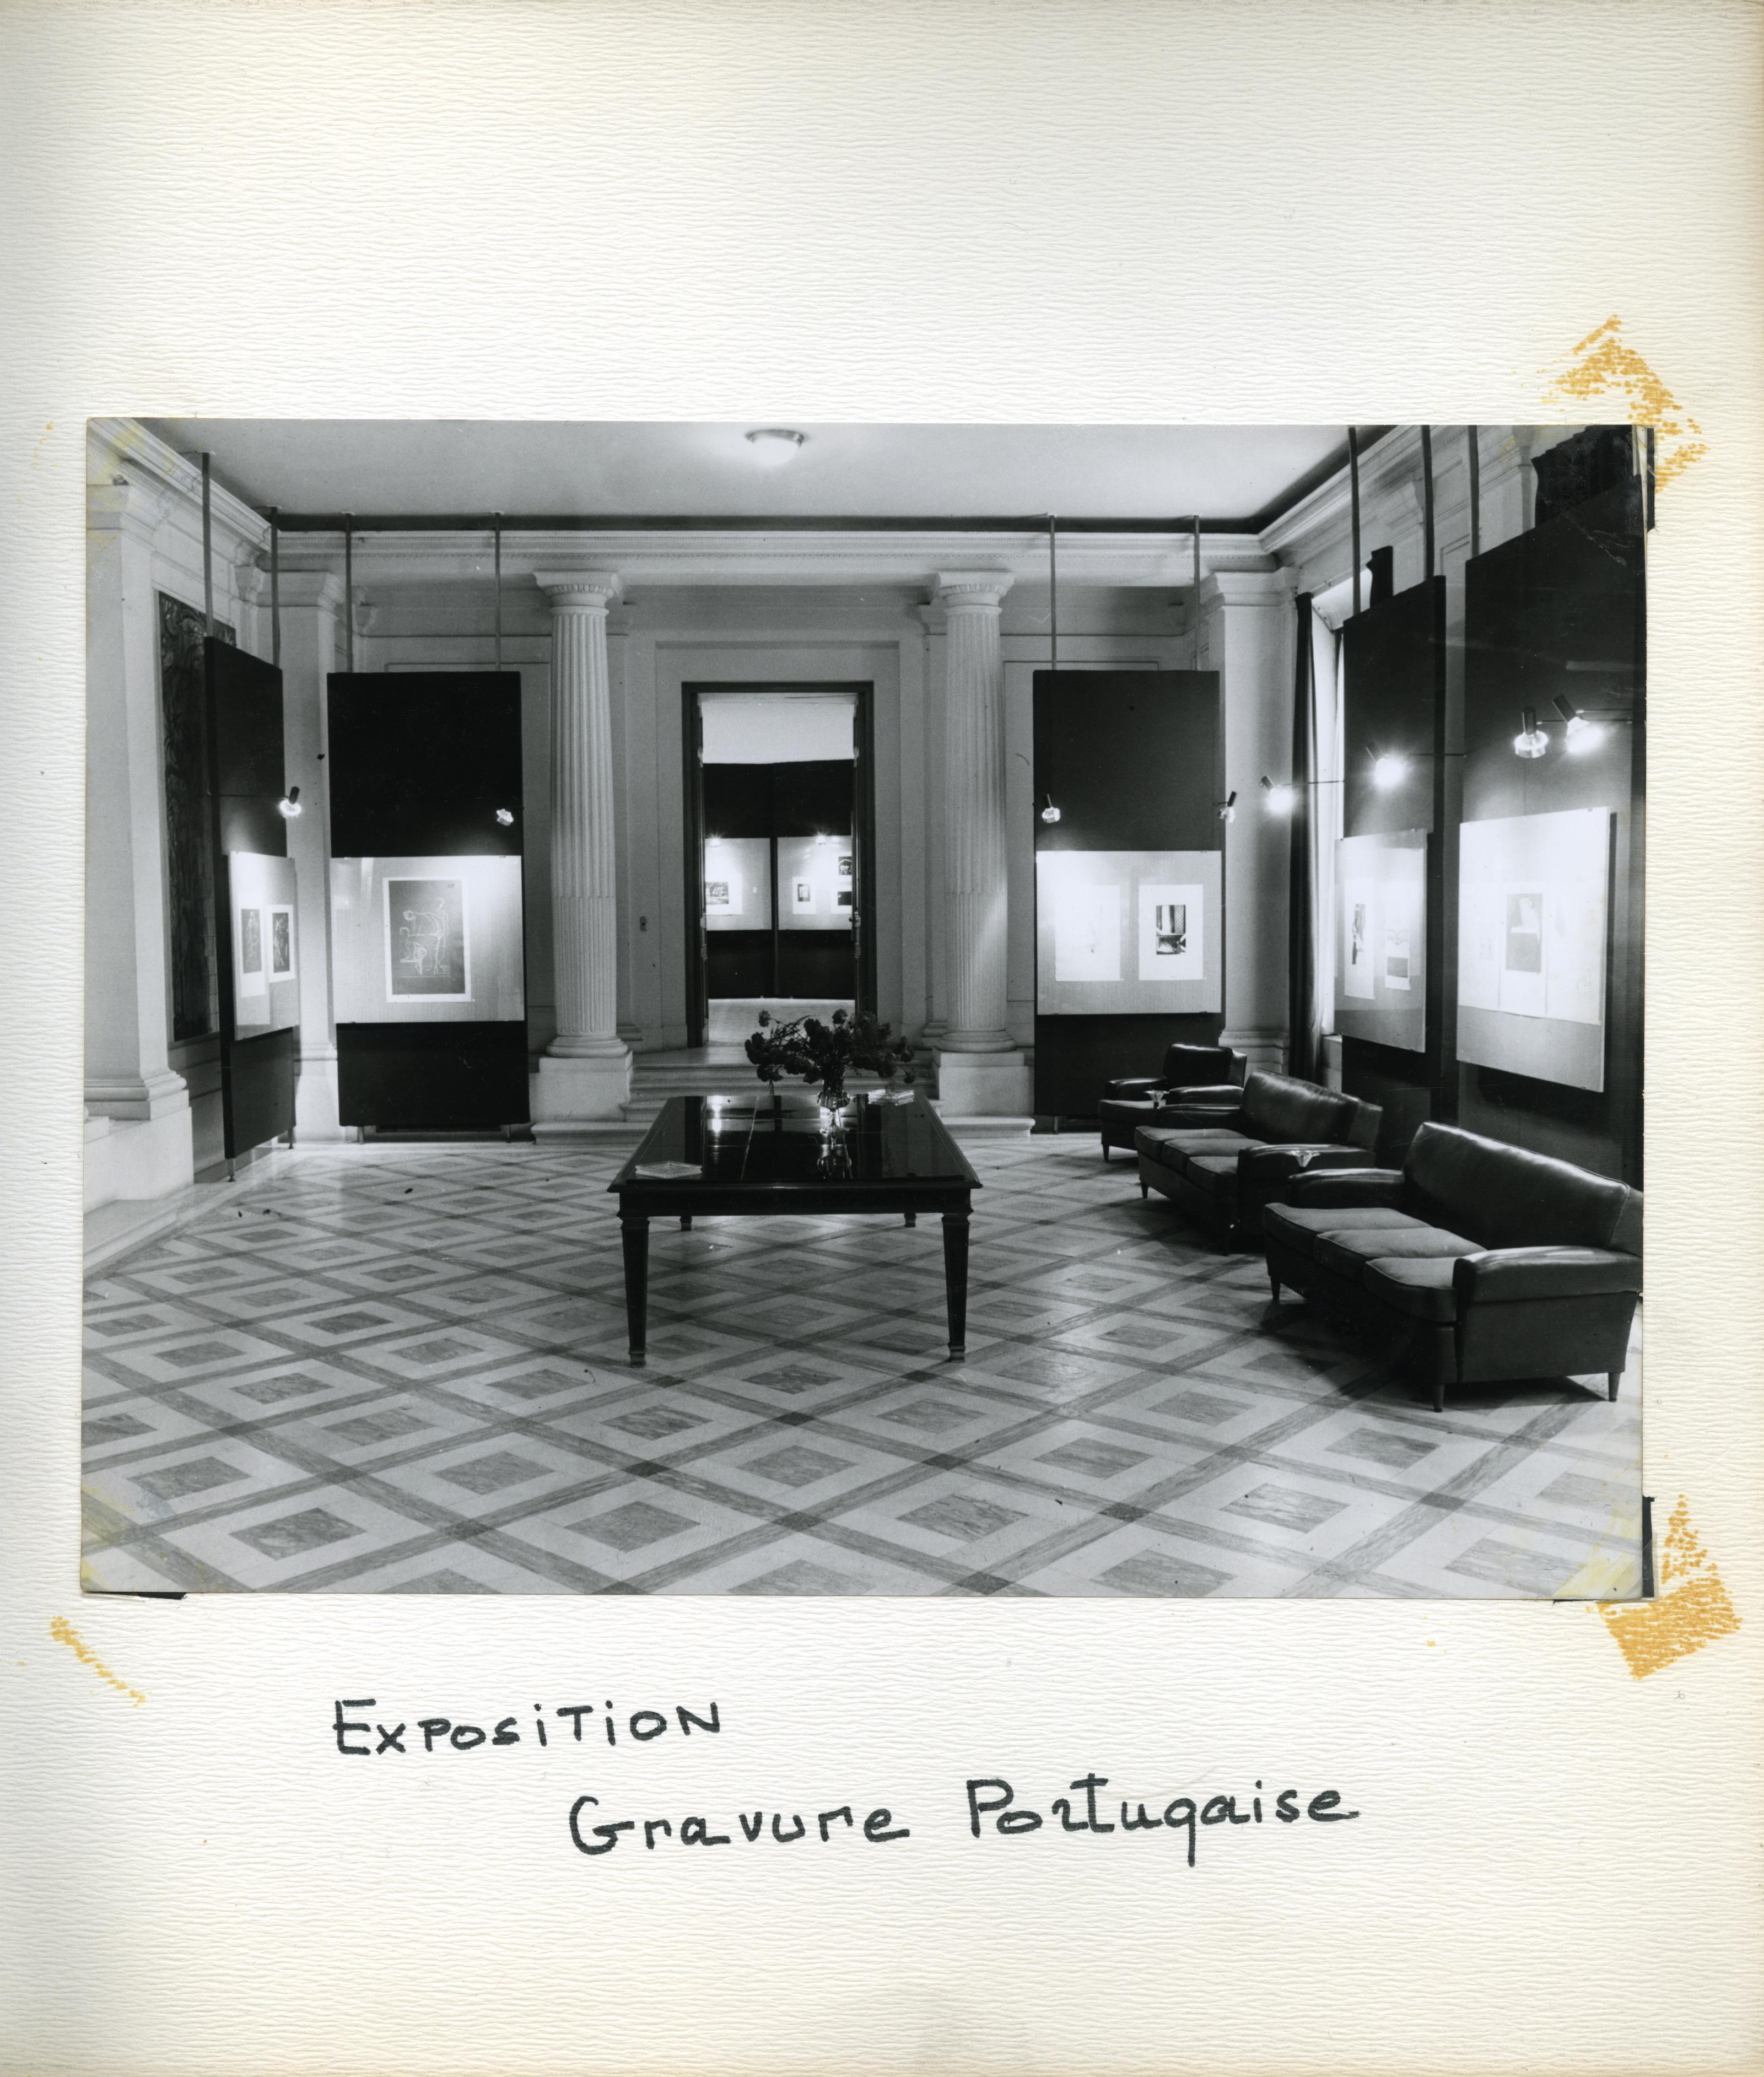 Fotografias em álbum da inauguração da exposição